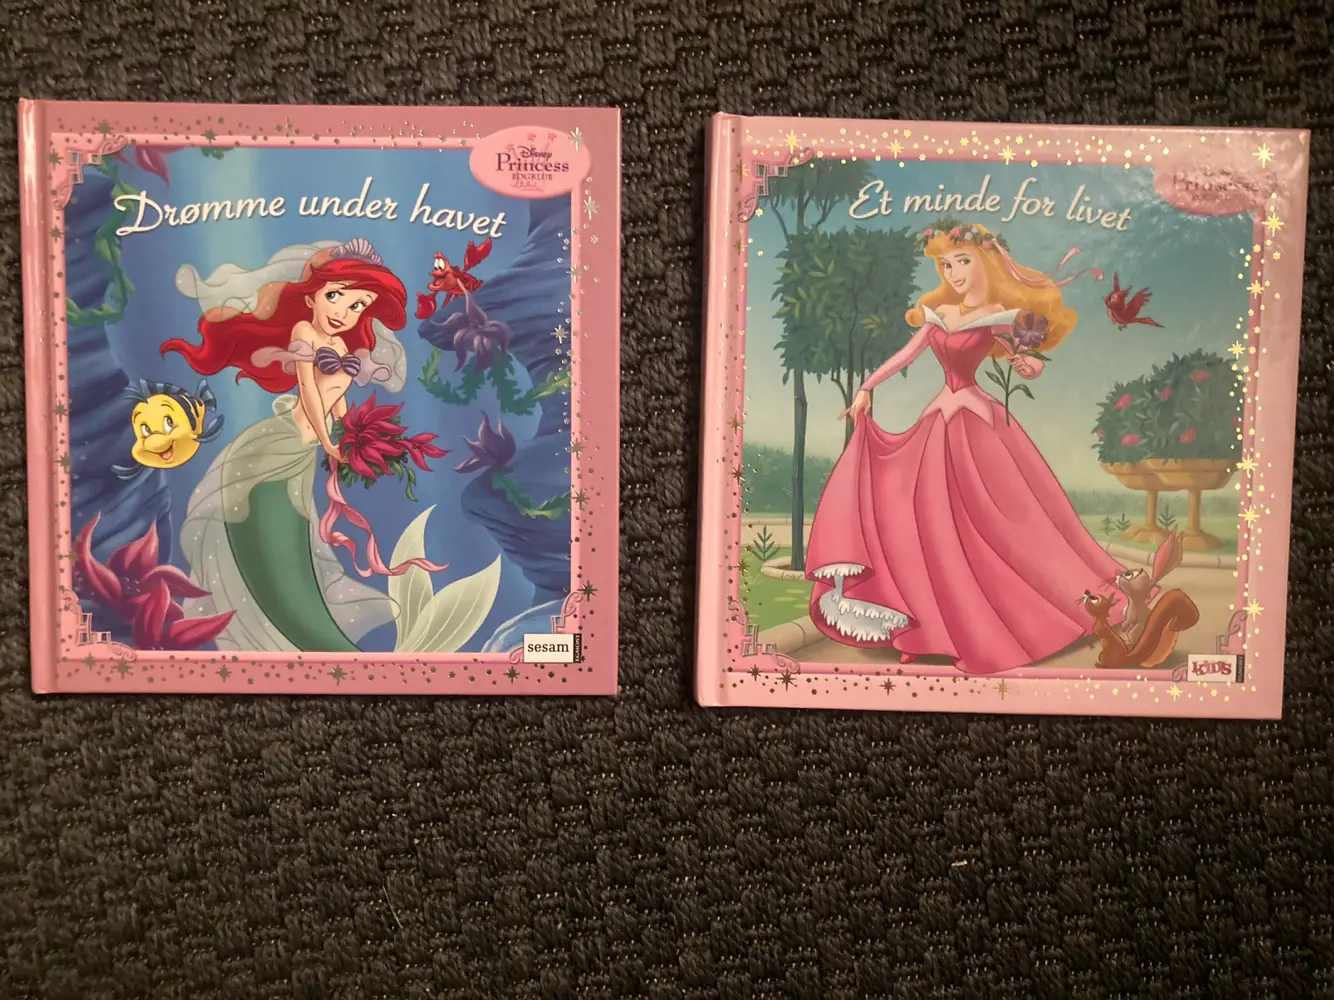 Disney Princess bogklub 3 helt nye bøger